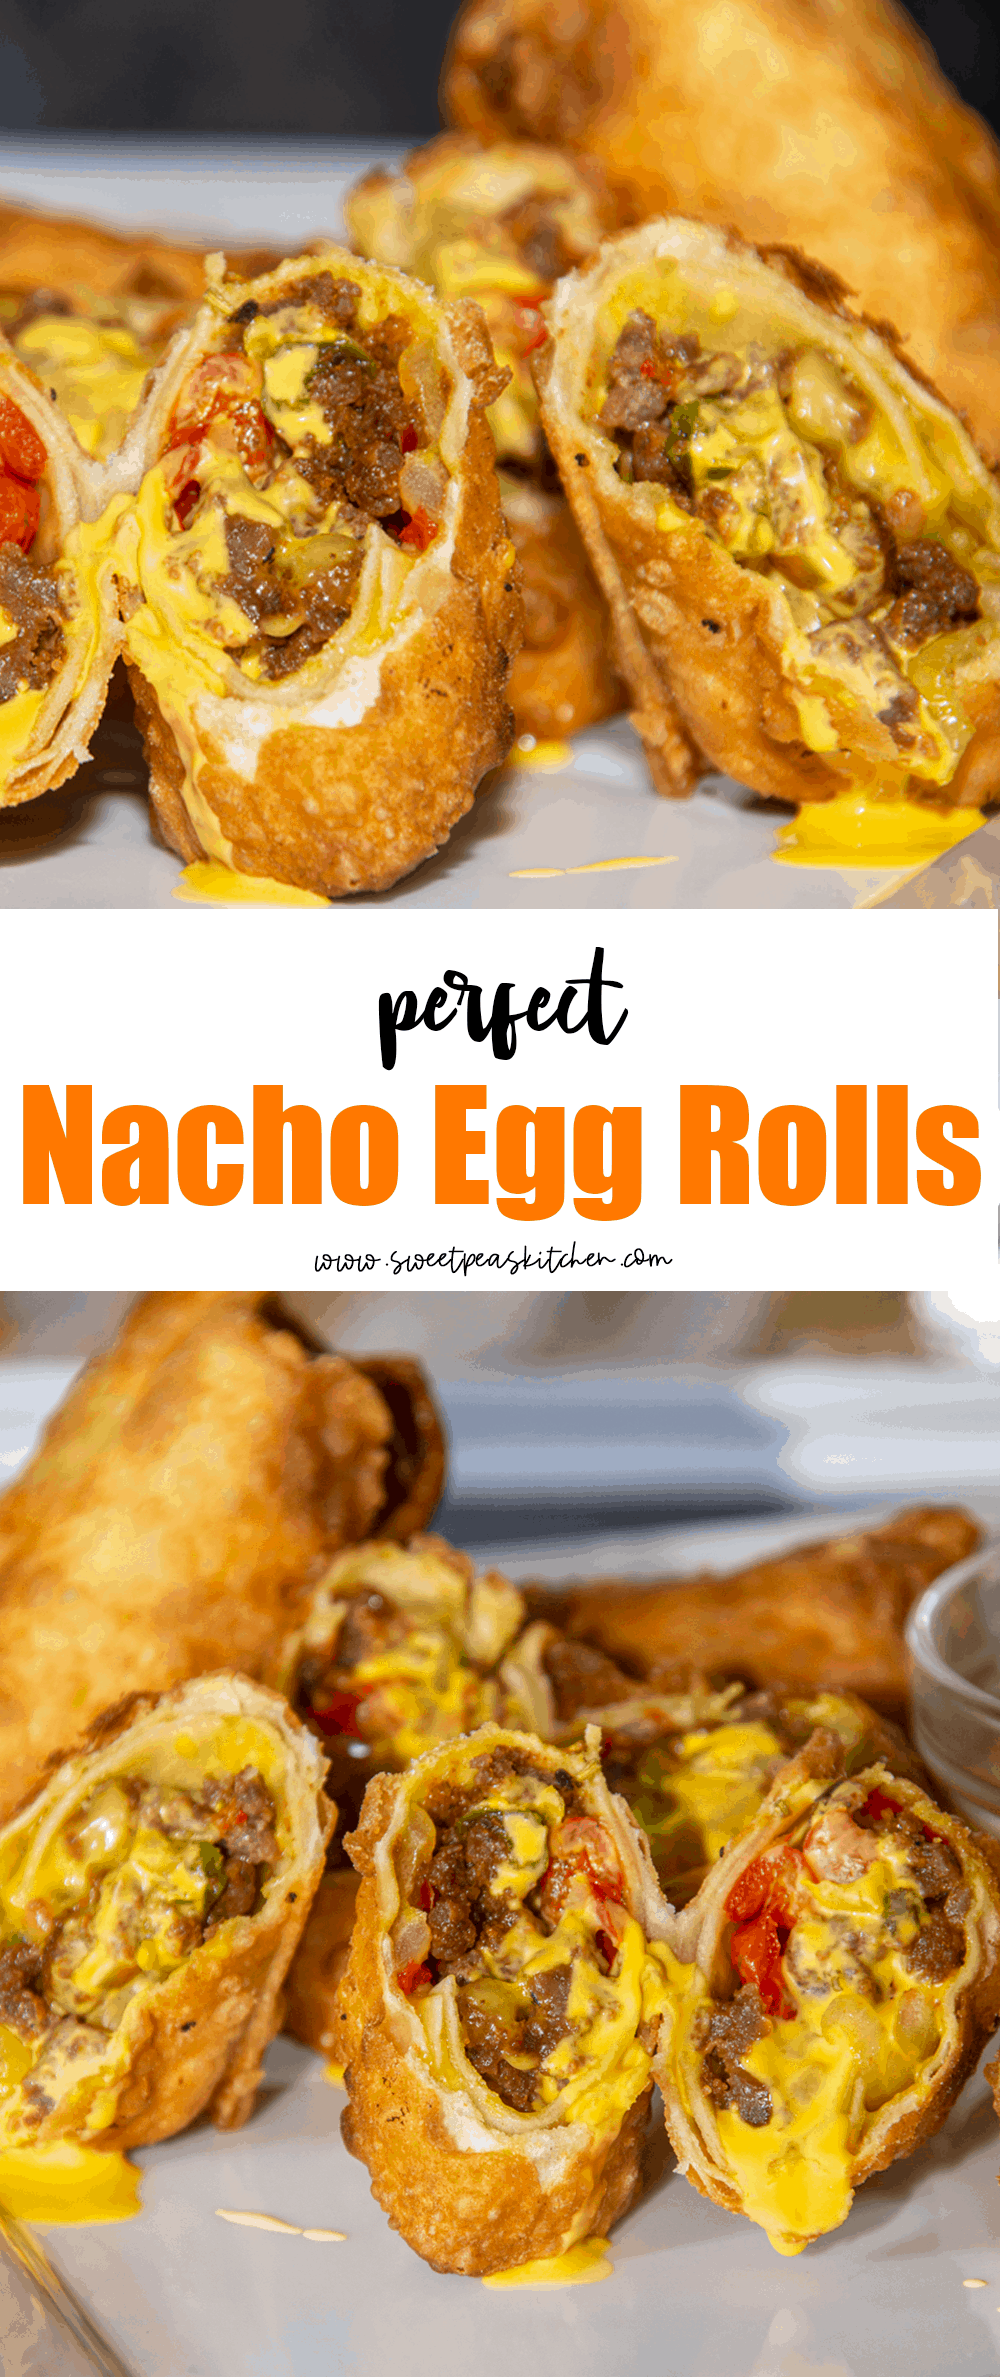 Nacho Egg Rolls on Pinterest